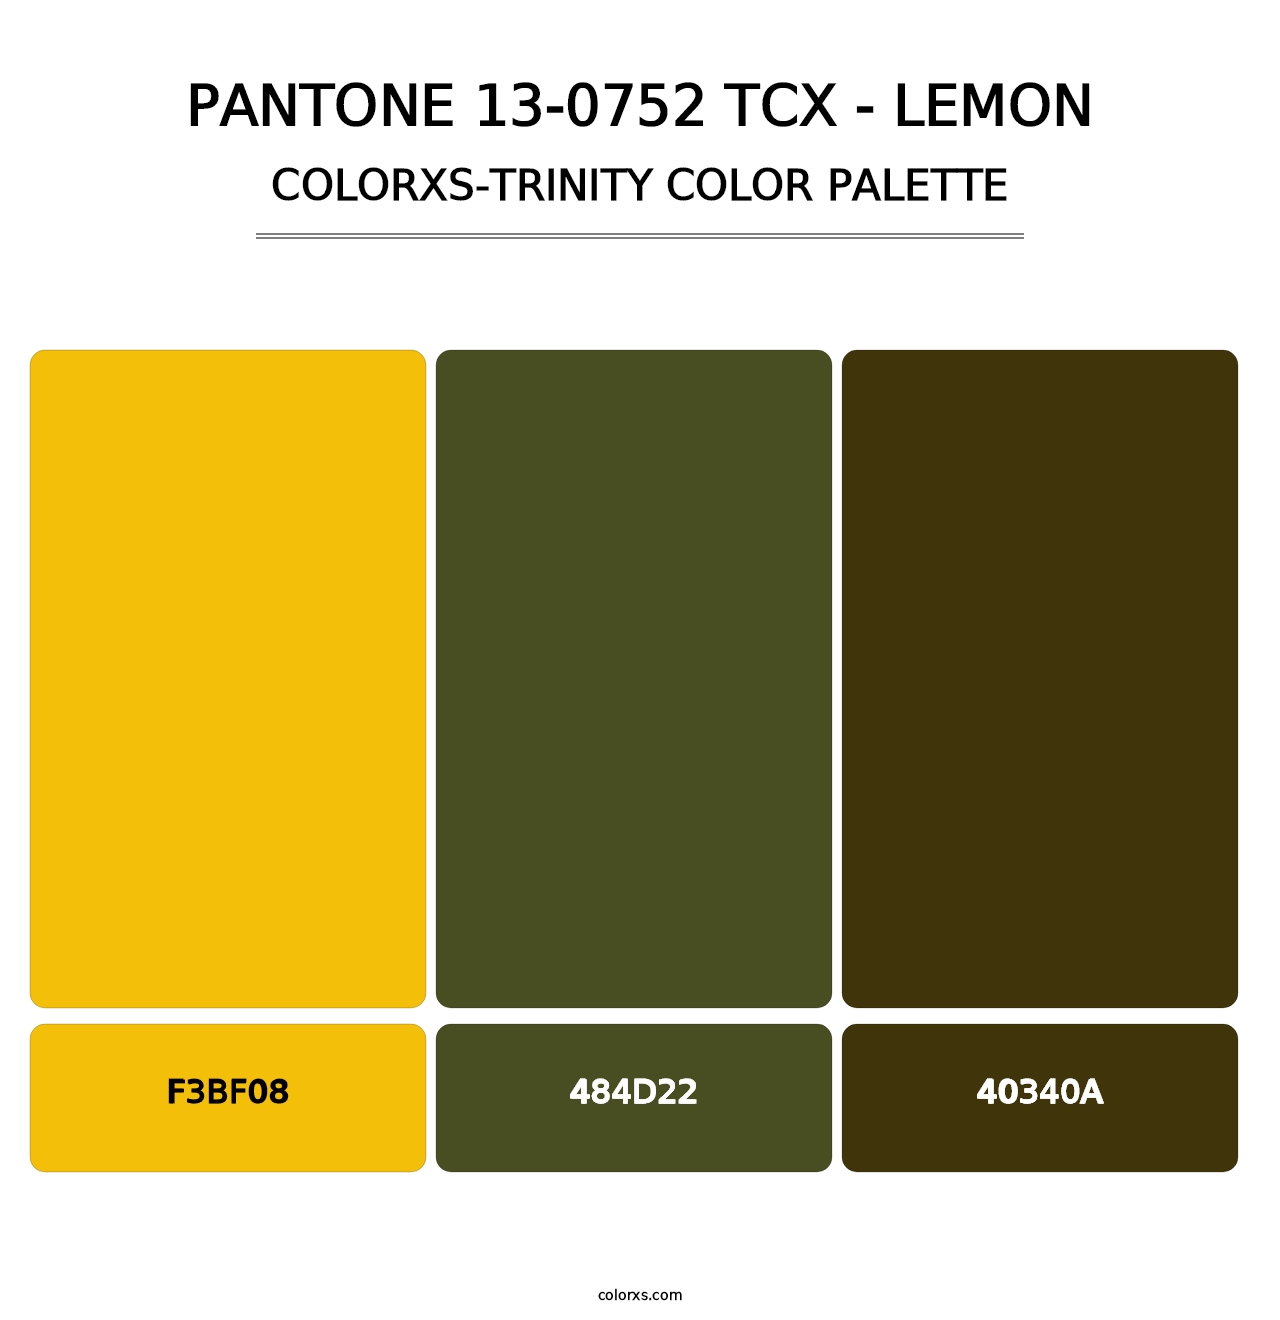 PANTONE 13-0752 TCX - Lemon - Colorxs Trinity Palette